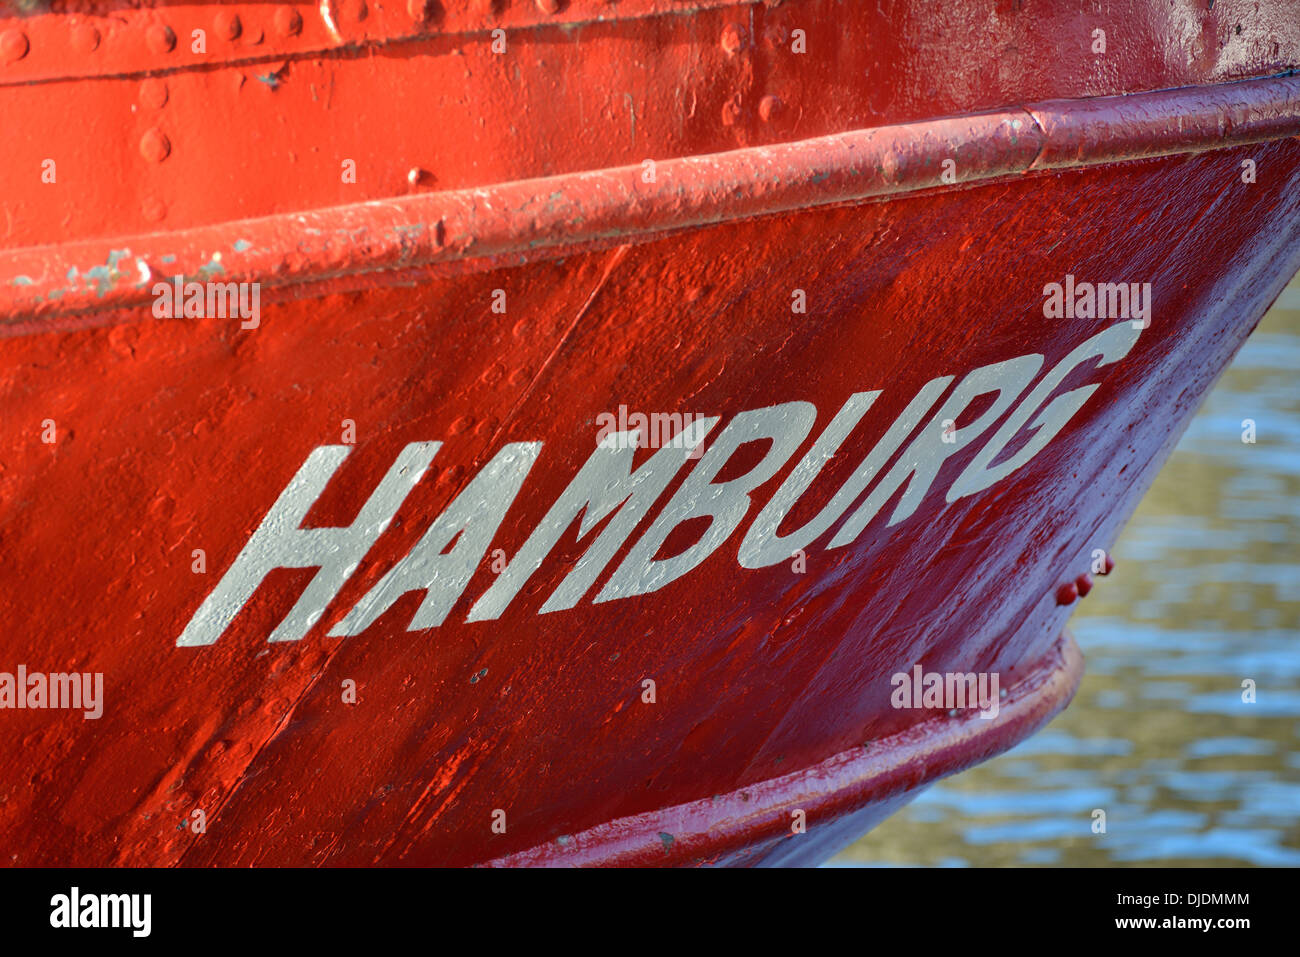 Mot "Hamburg' sur un navire dans le port, Hambourg, Allemagne Banque D'Images